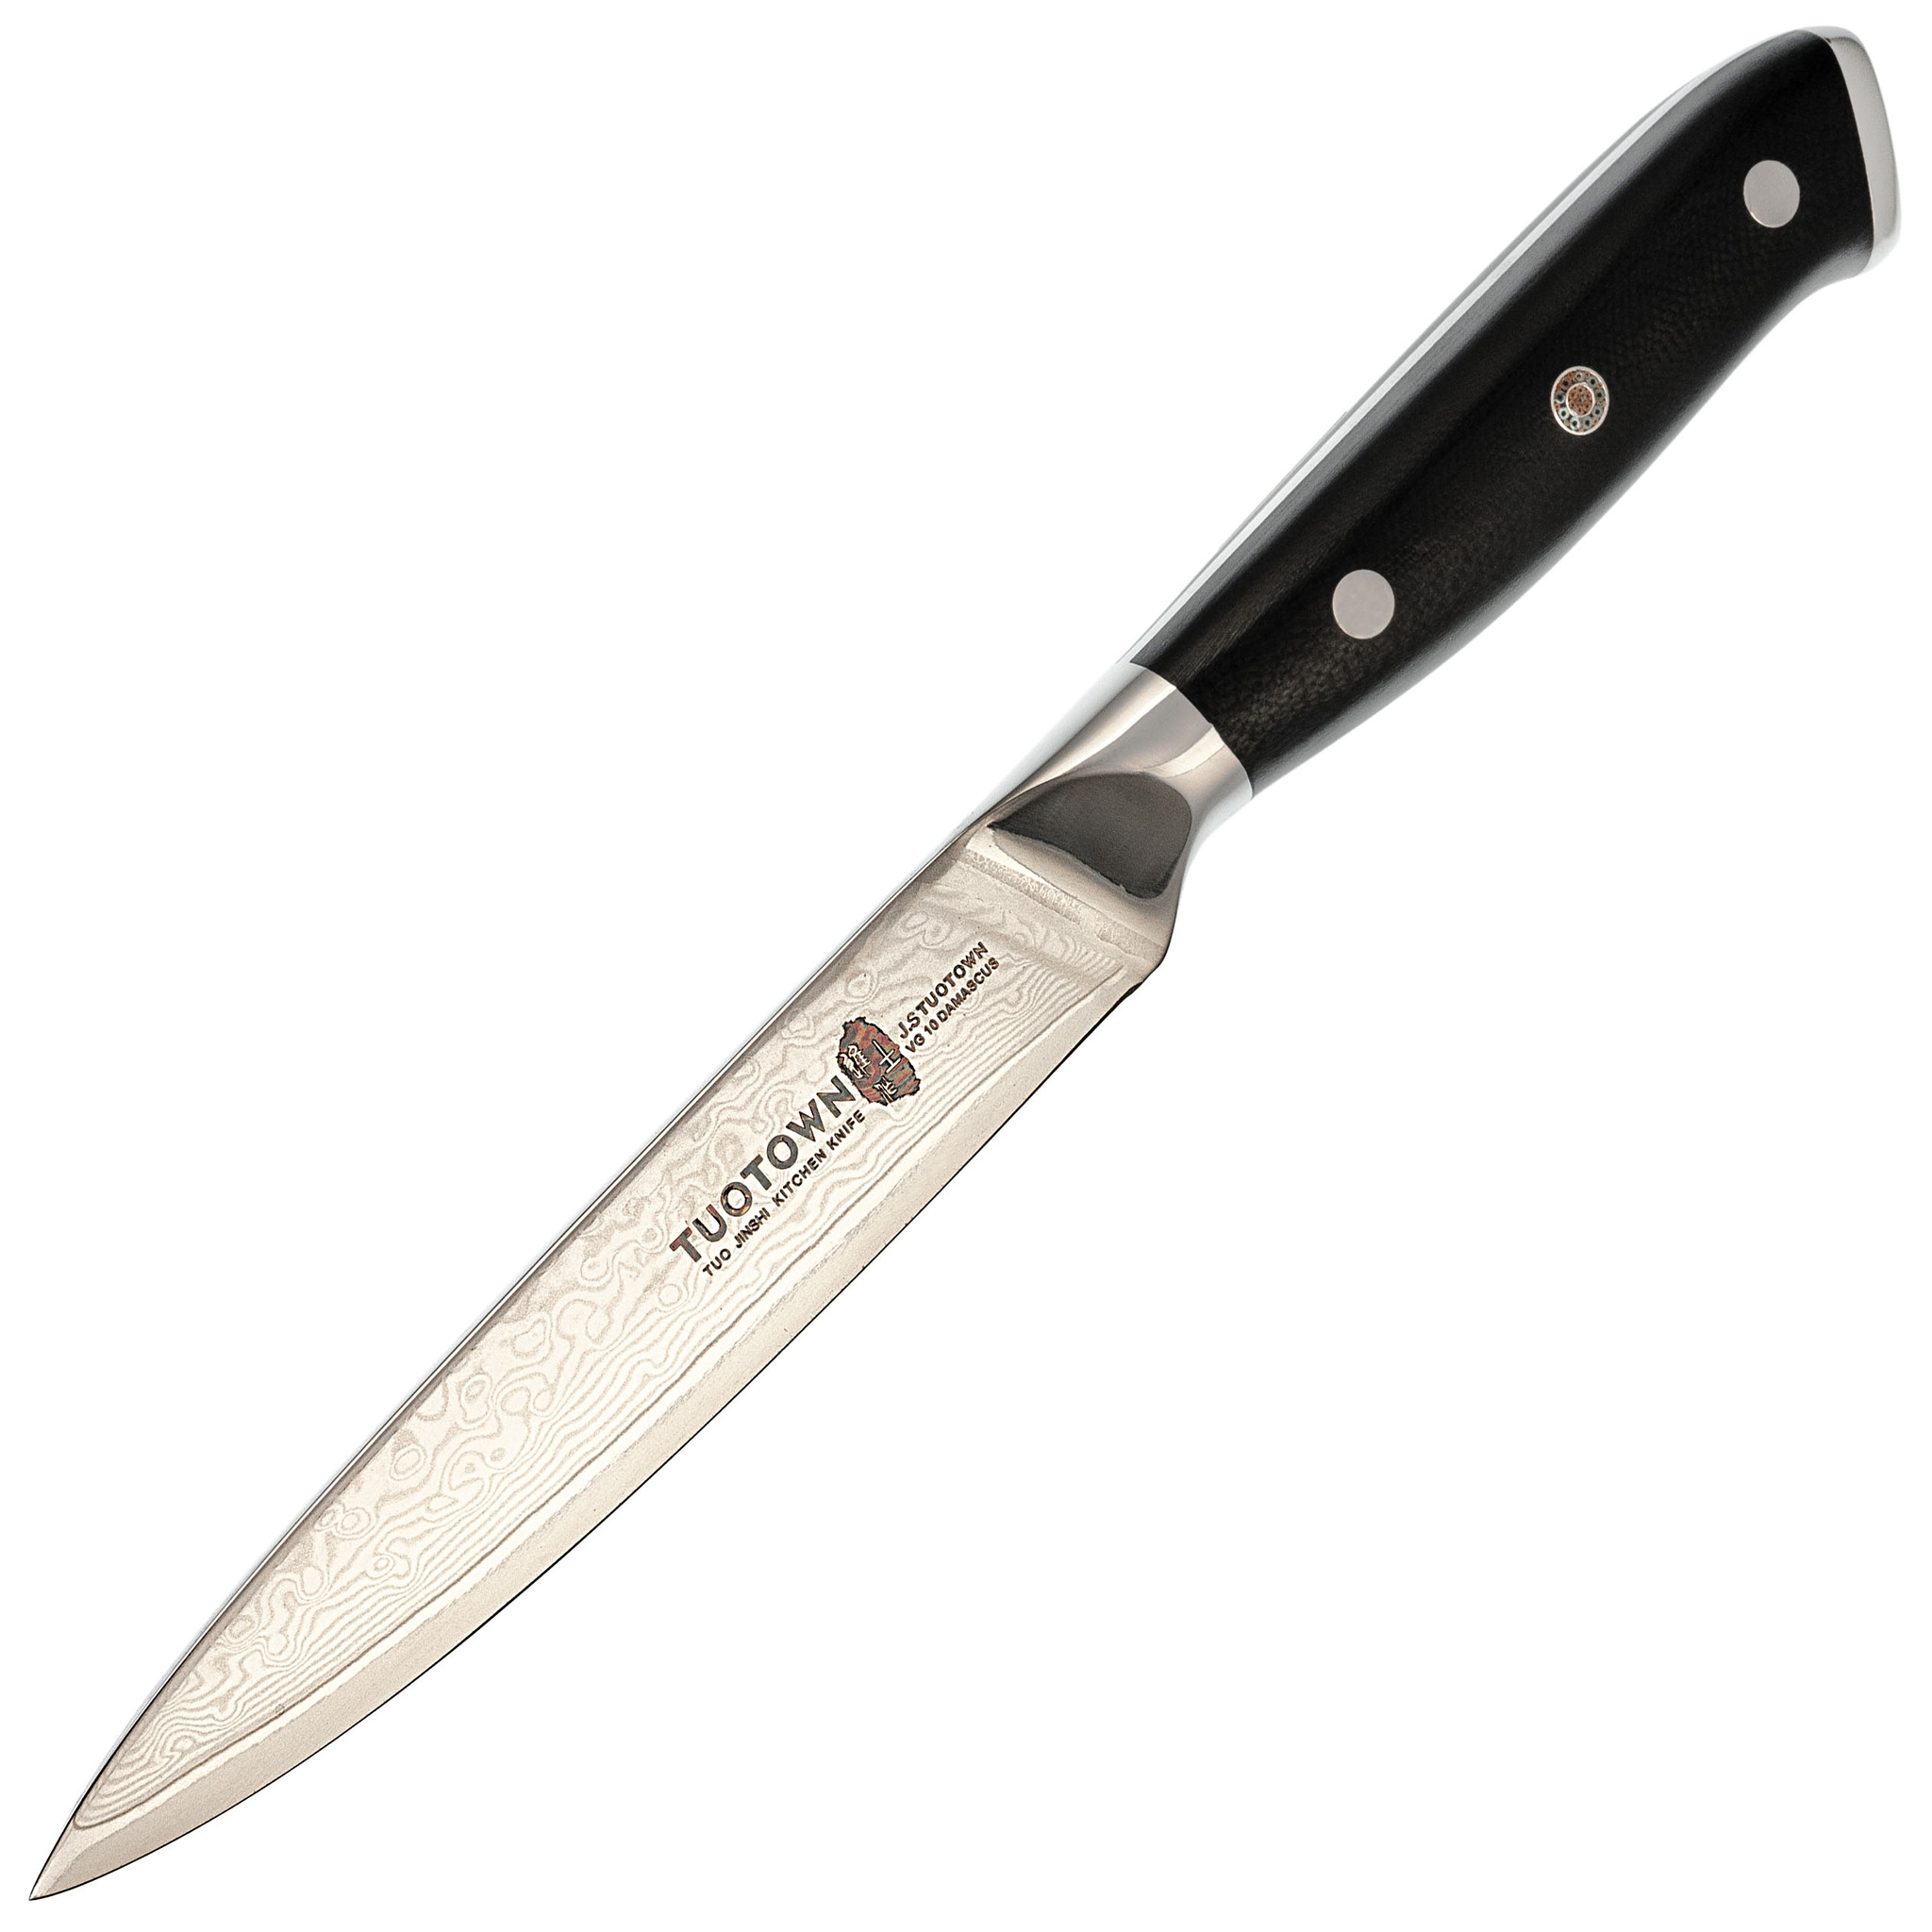 Кухонные ножи tuotown. TUOTOWN кованый нож Hai Chefs 13 см 905011 сталь aus-10, рукоять дерево венге.